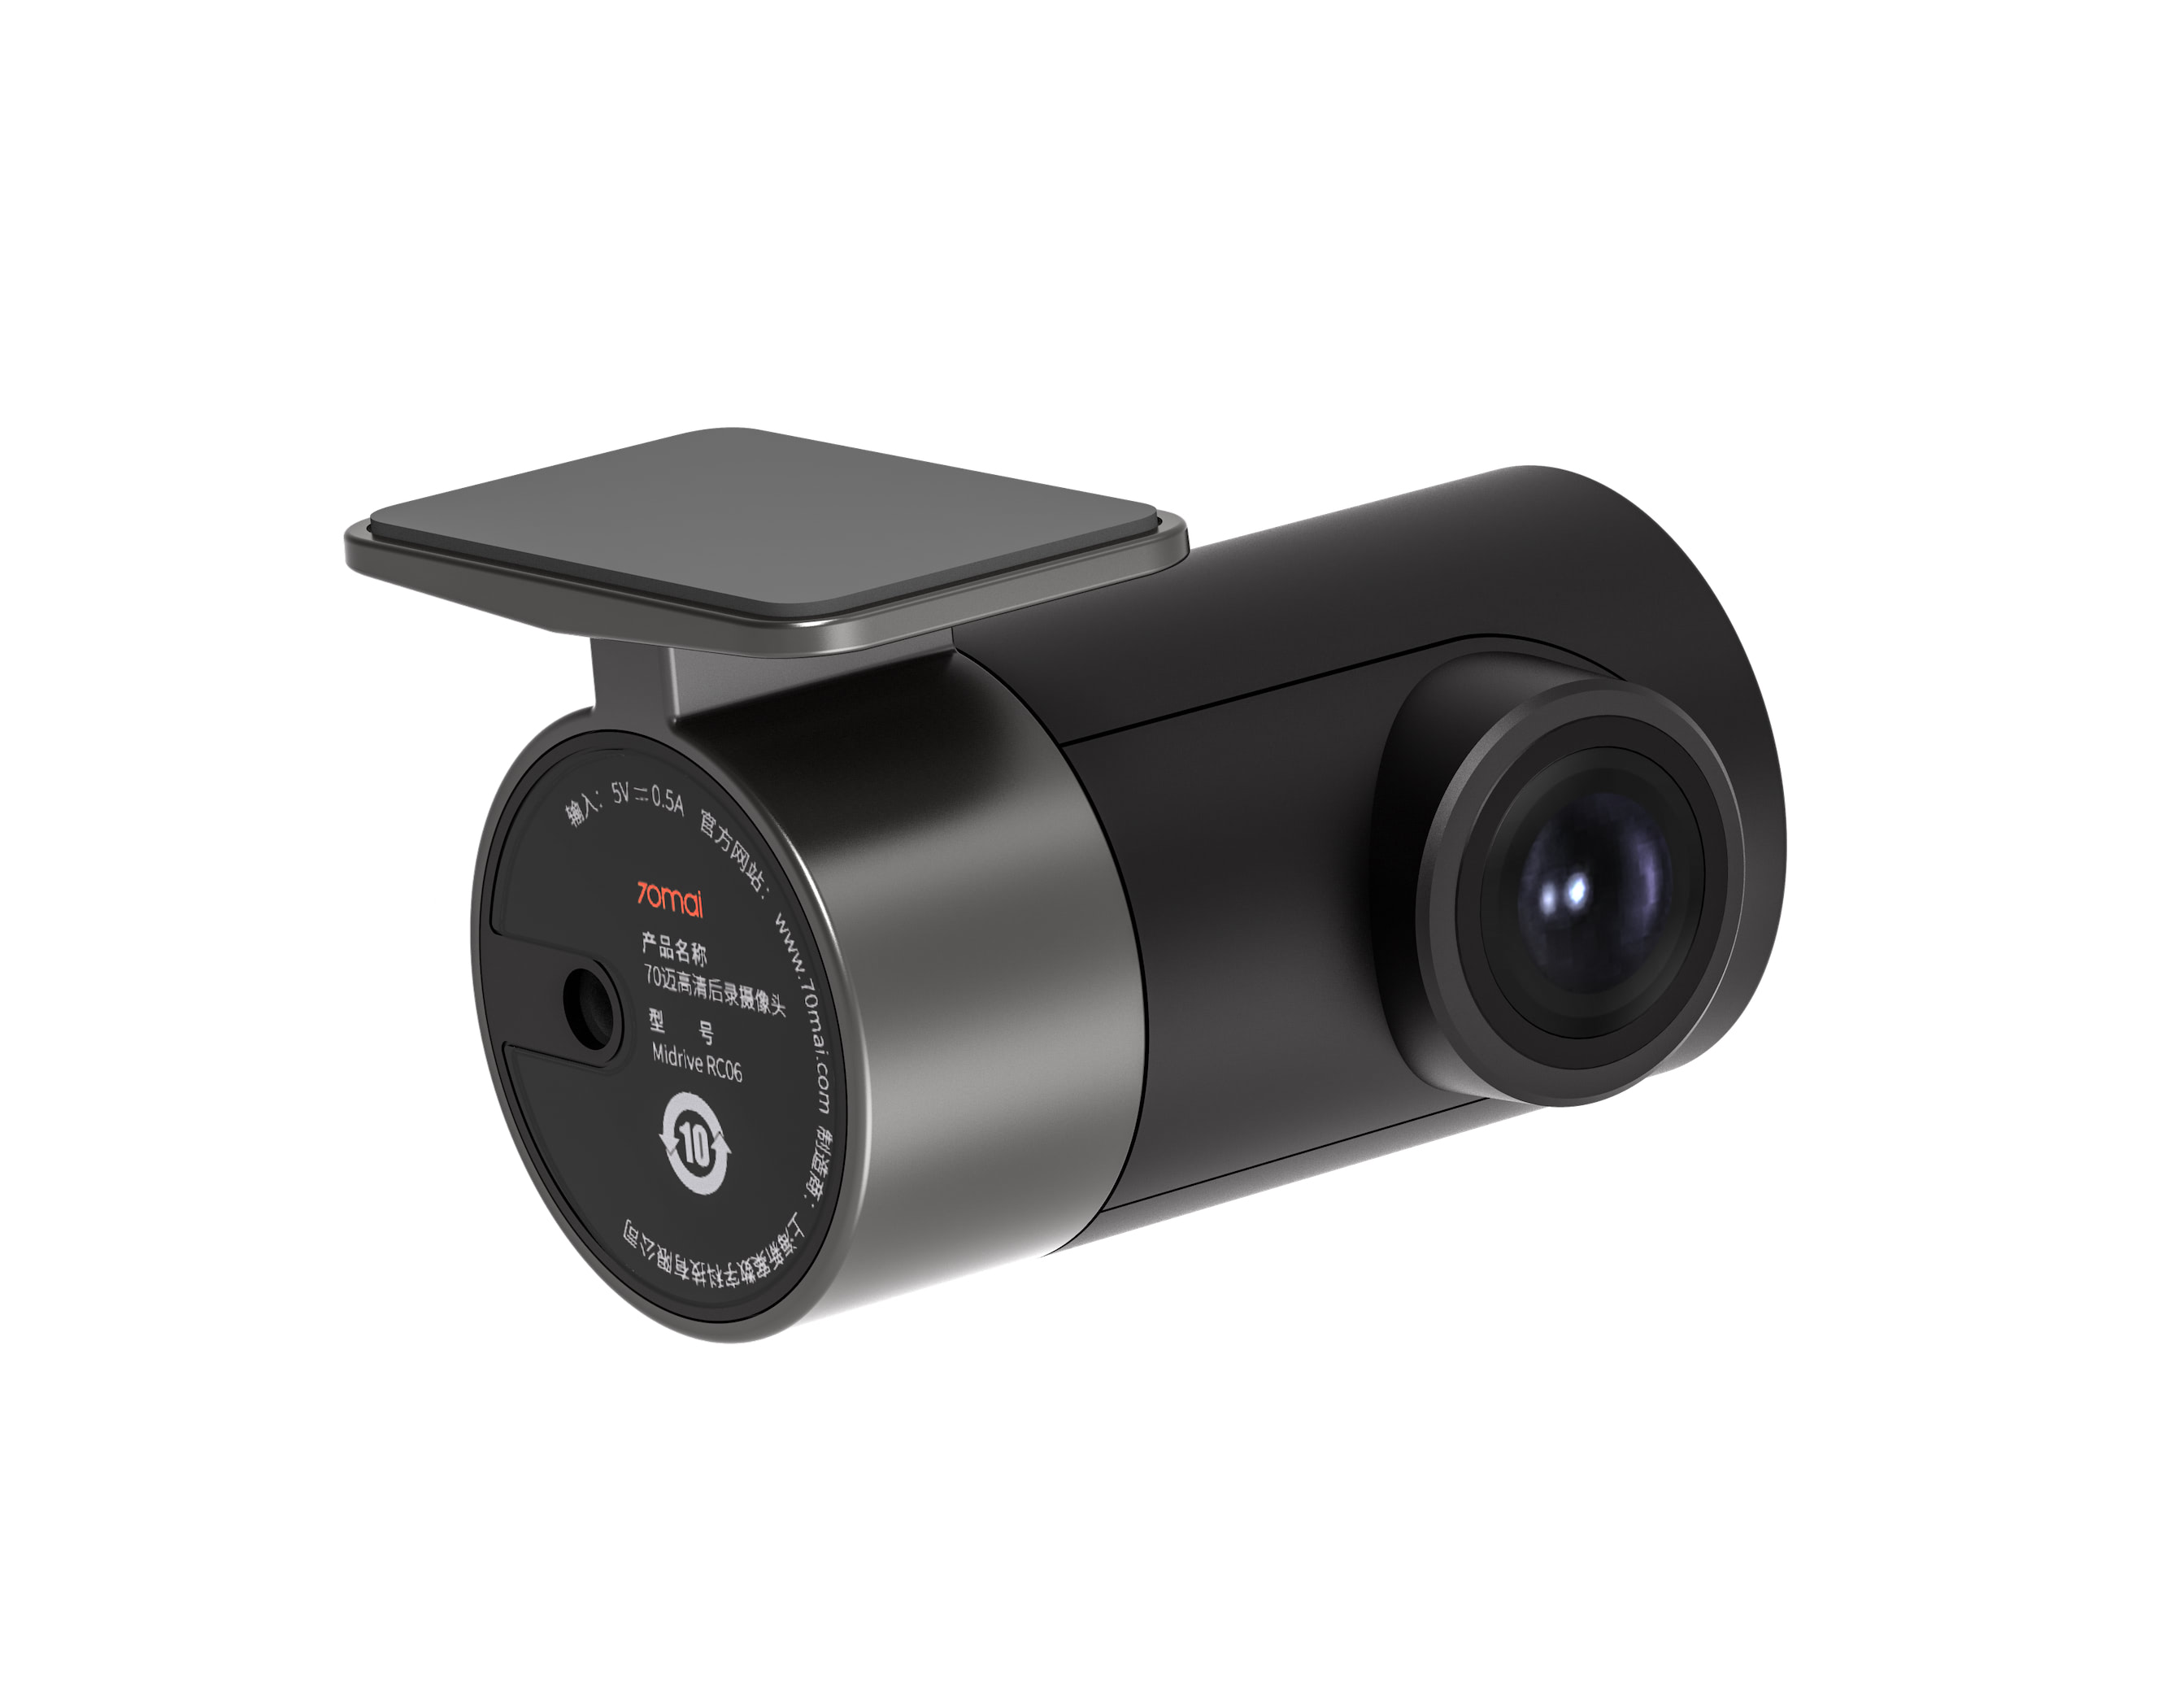 Camera hành trình ô tô loại cam sau 70mai RC06 dùng cho A800S A500S